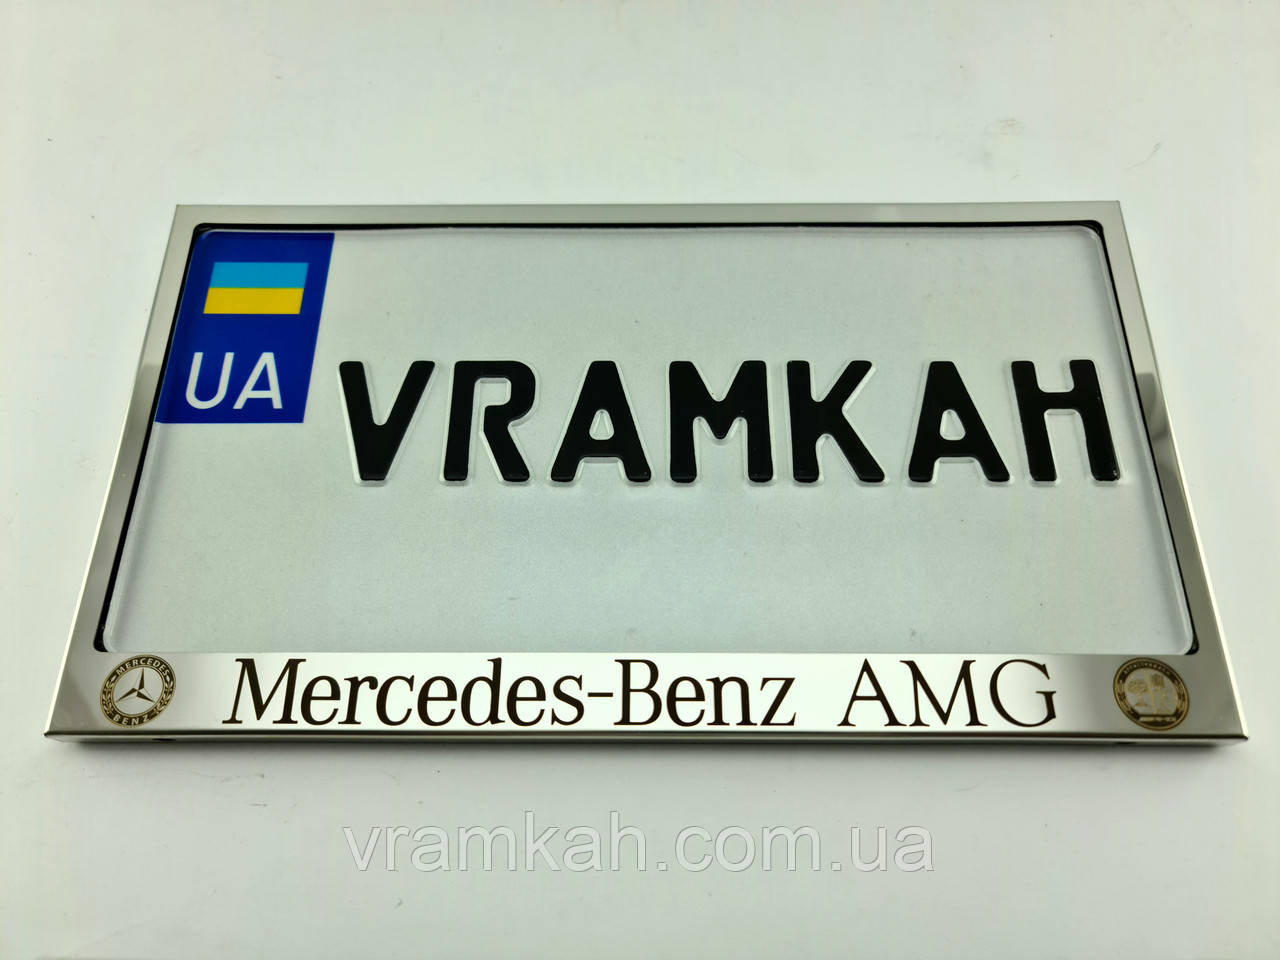 Номерна рамка для авто Mercedes-Benz AMG, рамка під американський номер